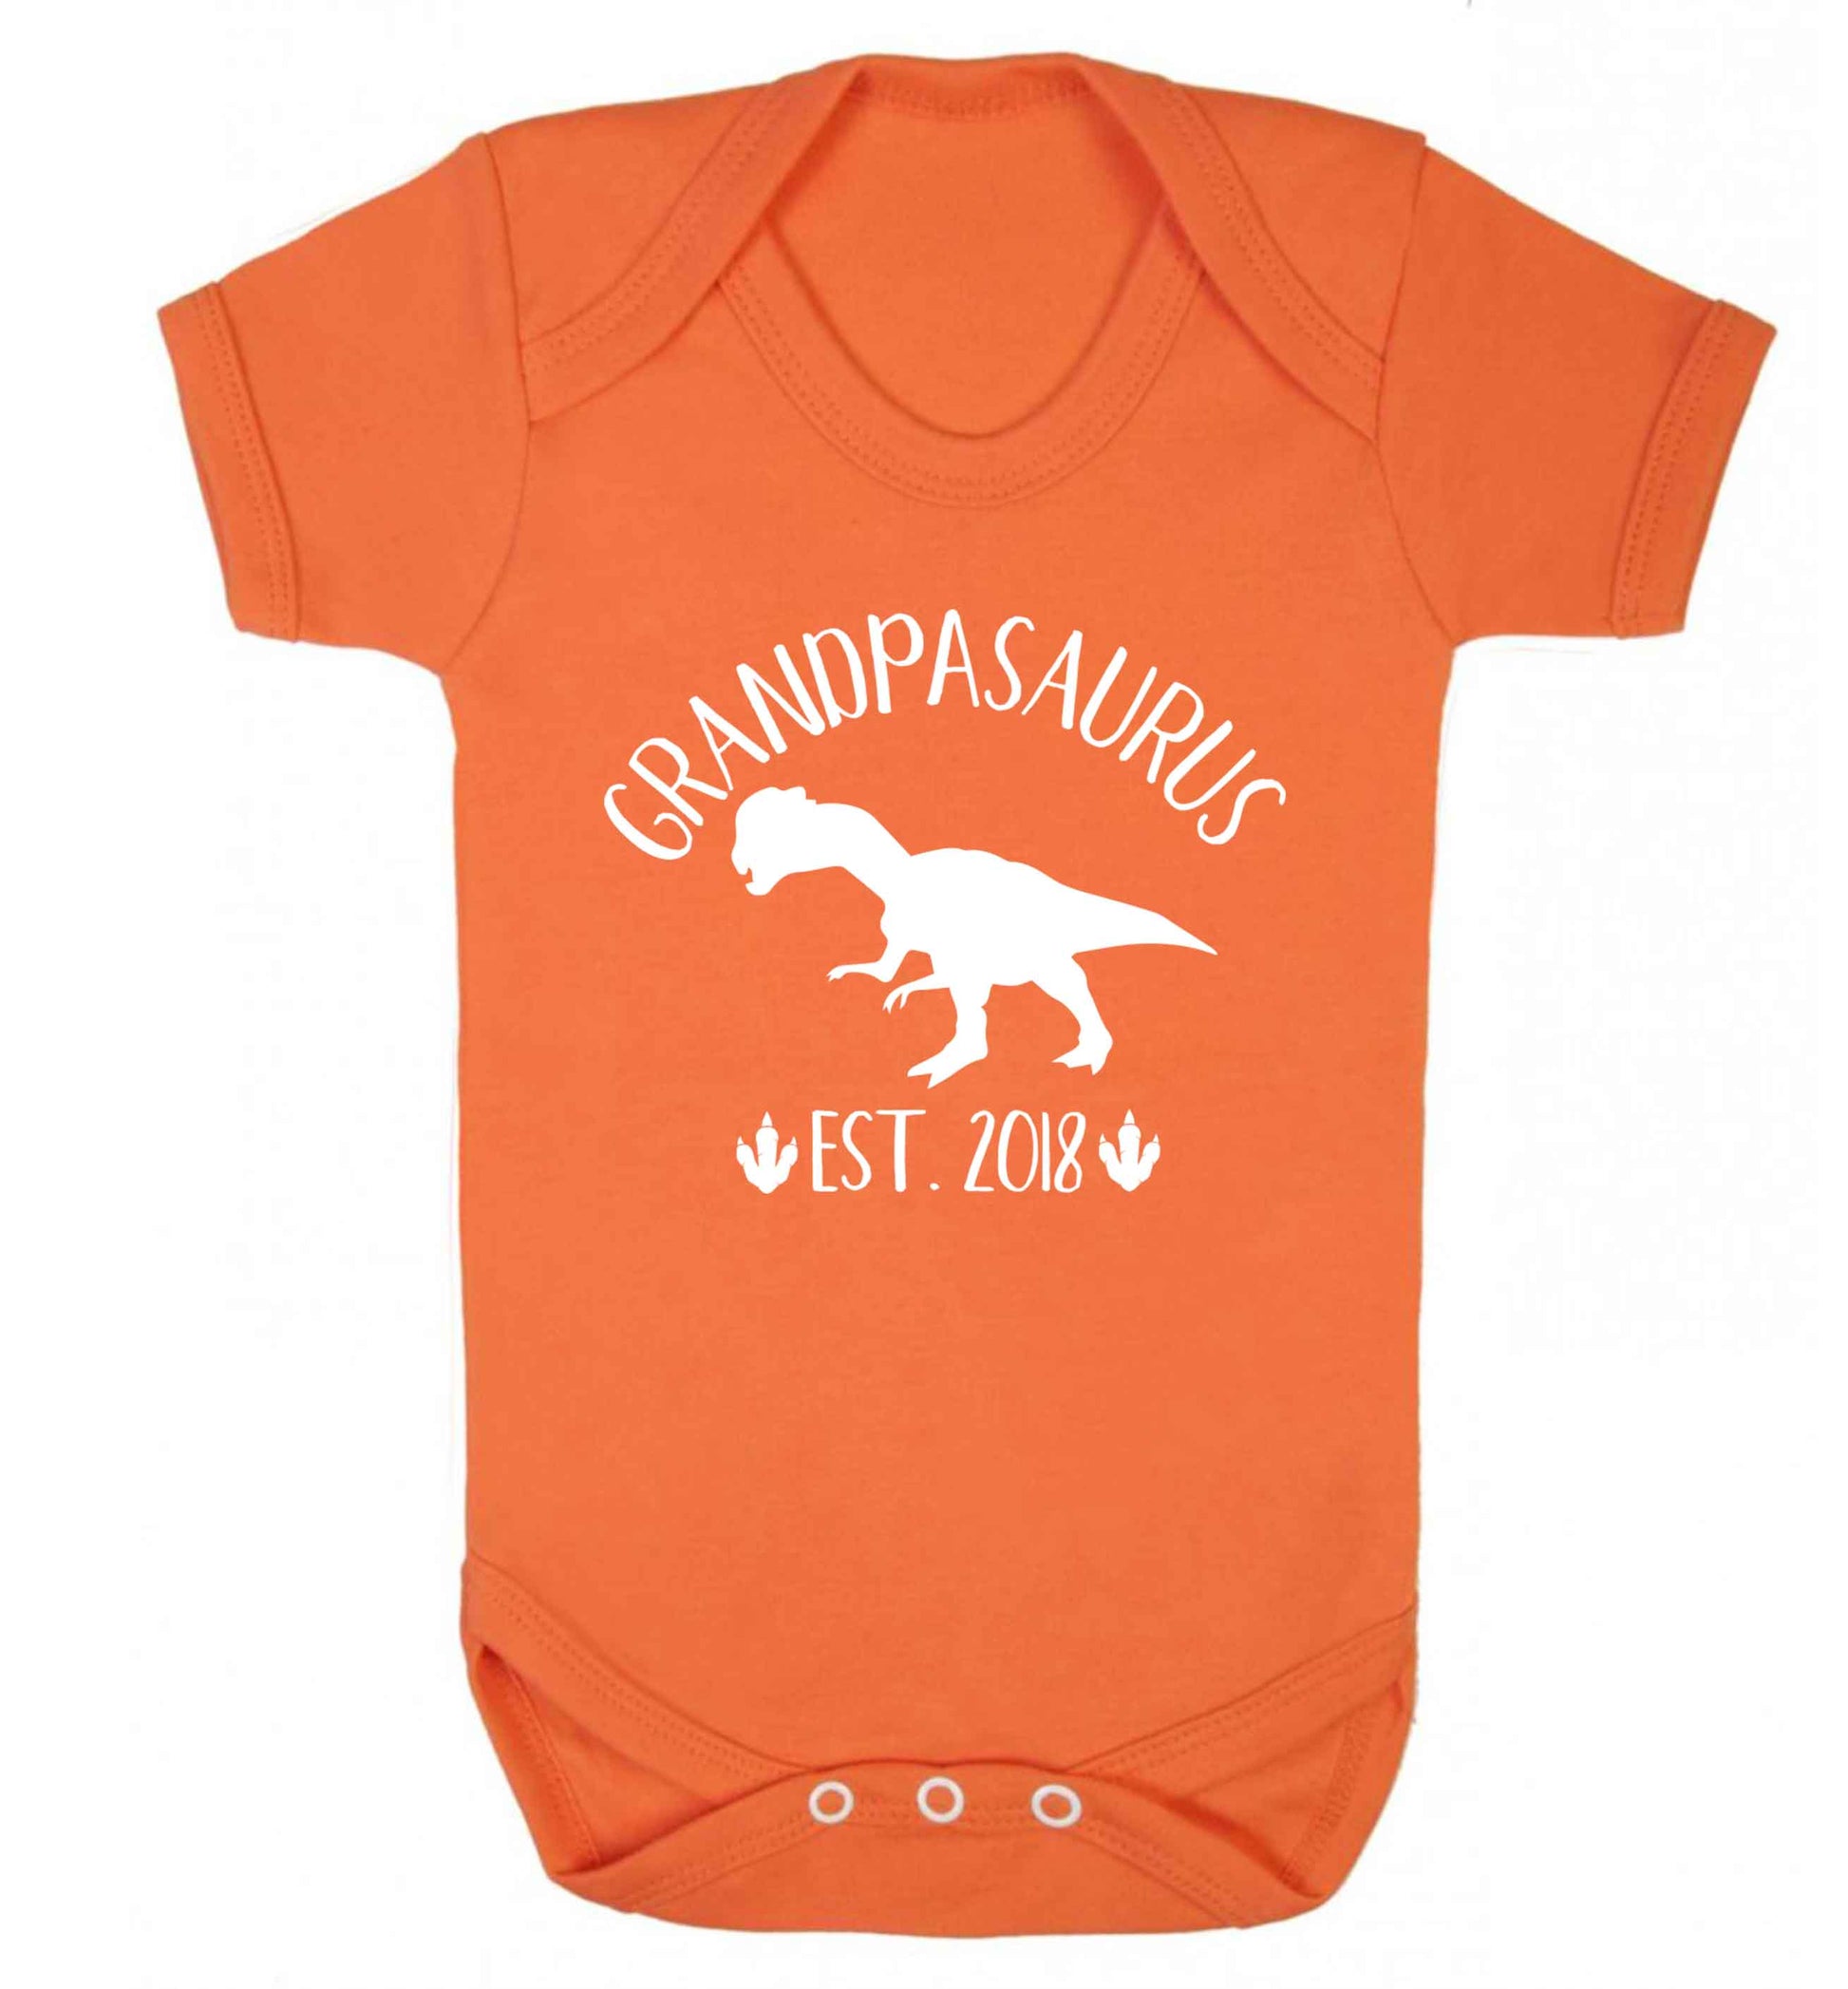 Personalised grandpasaurus since (custom date) Baby Vest orange 18-24 months